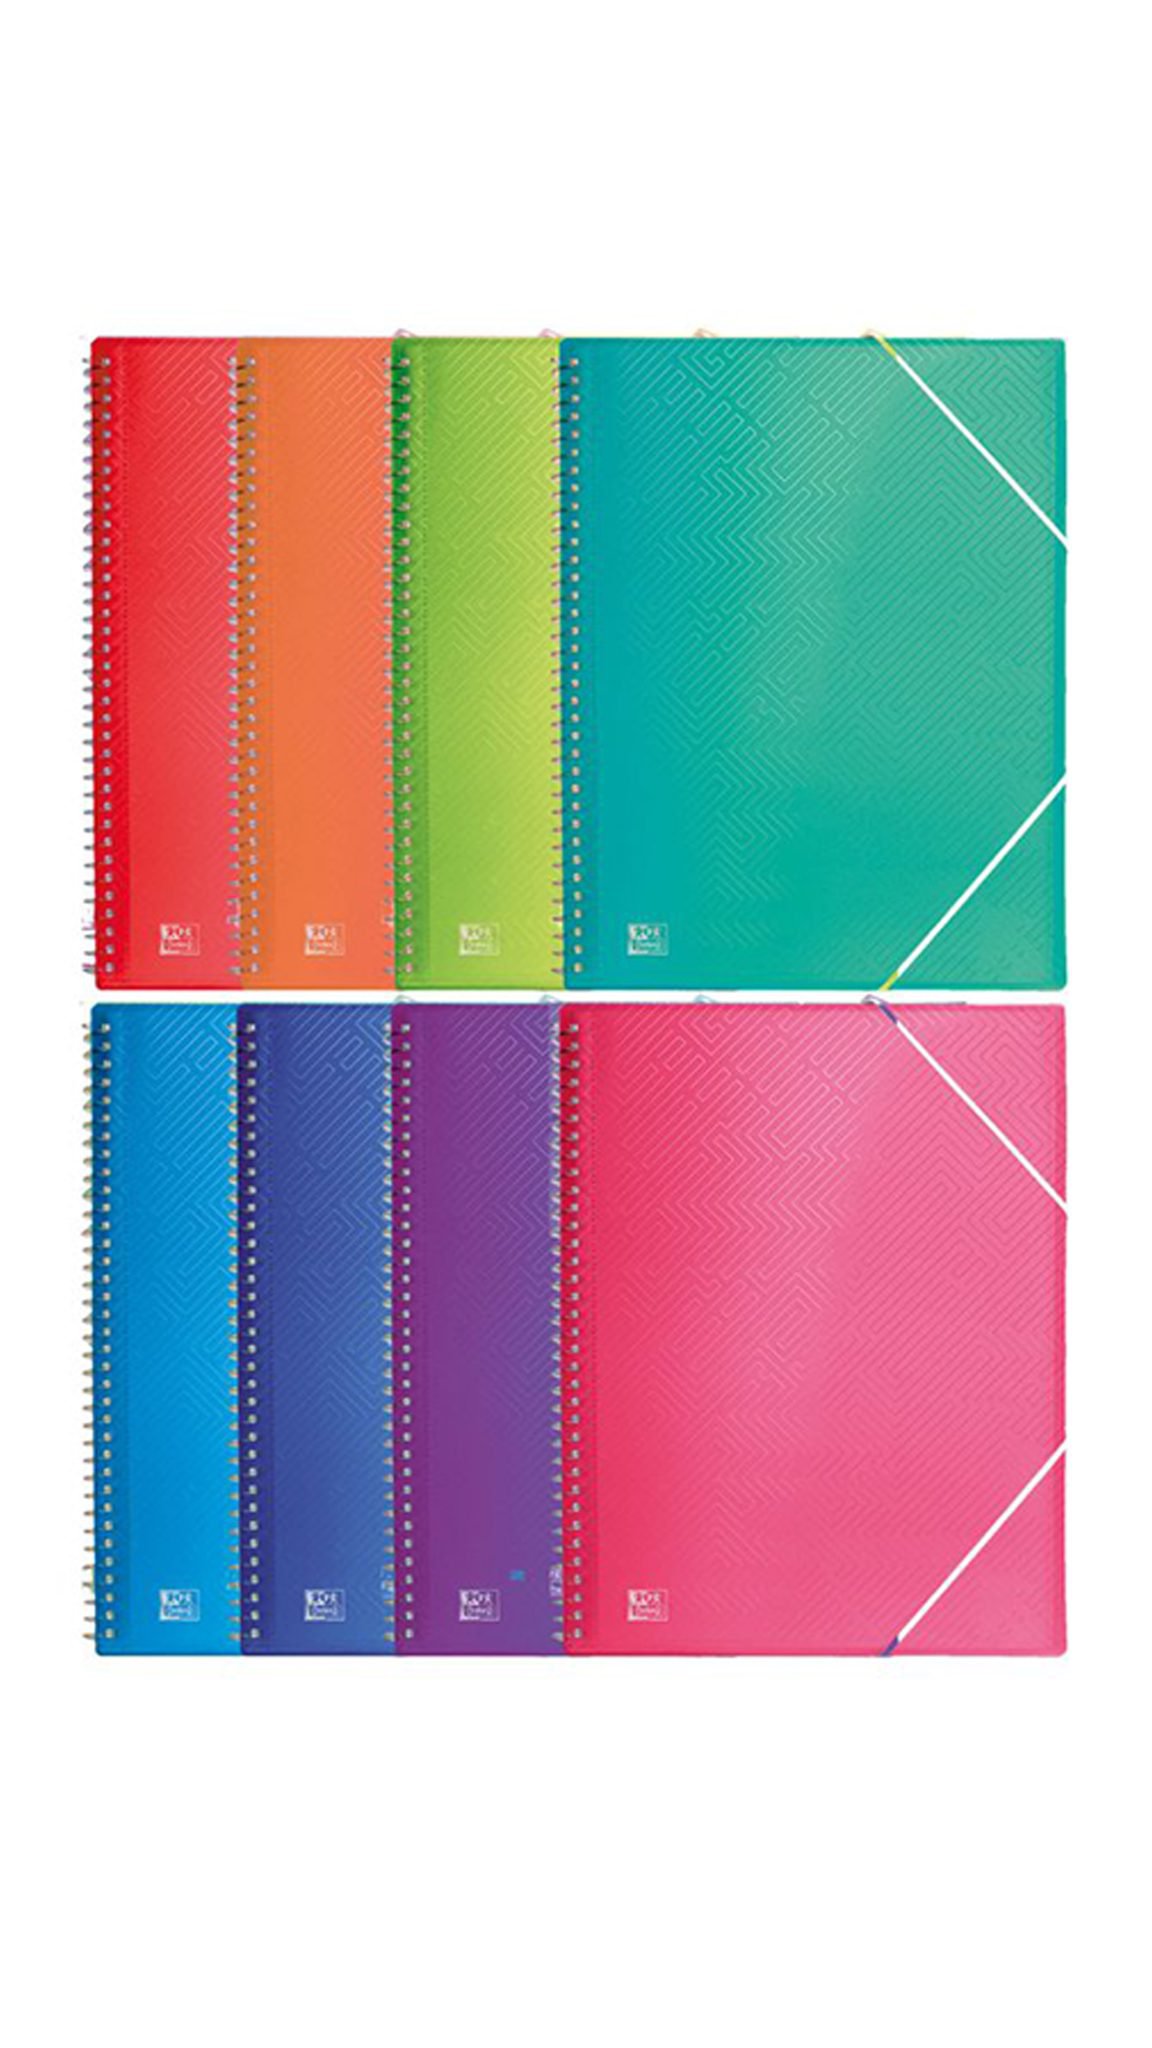 Carpeta espiral fundas Oxford en colores surtidos – 40 fundas-es-img-1